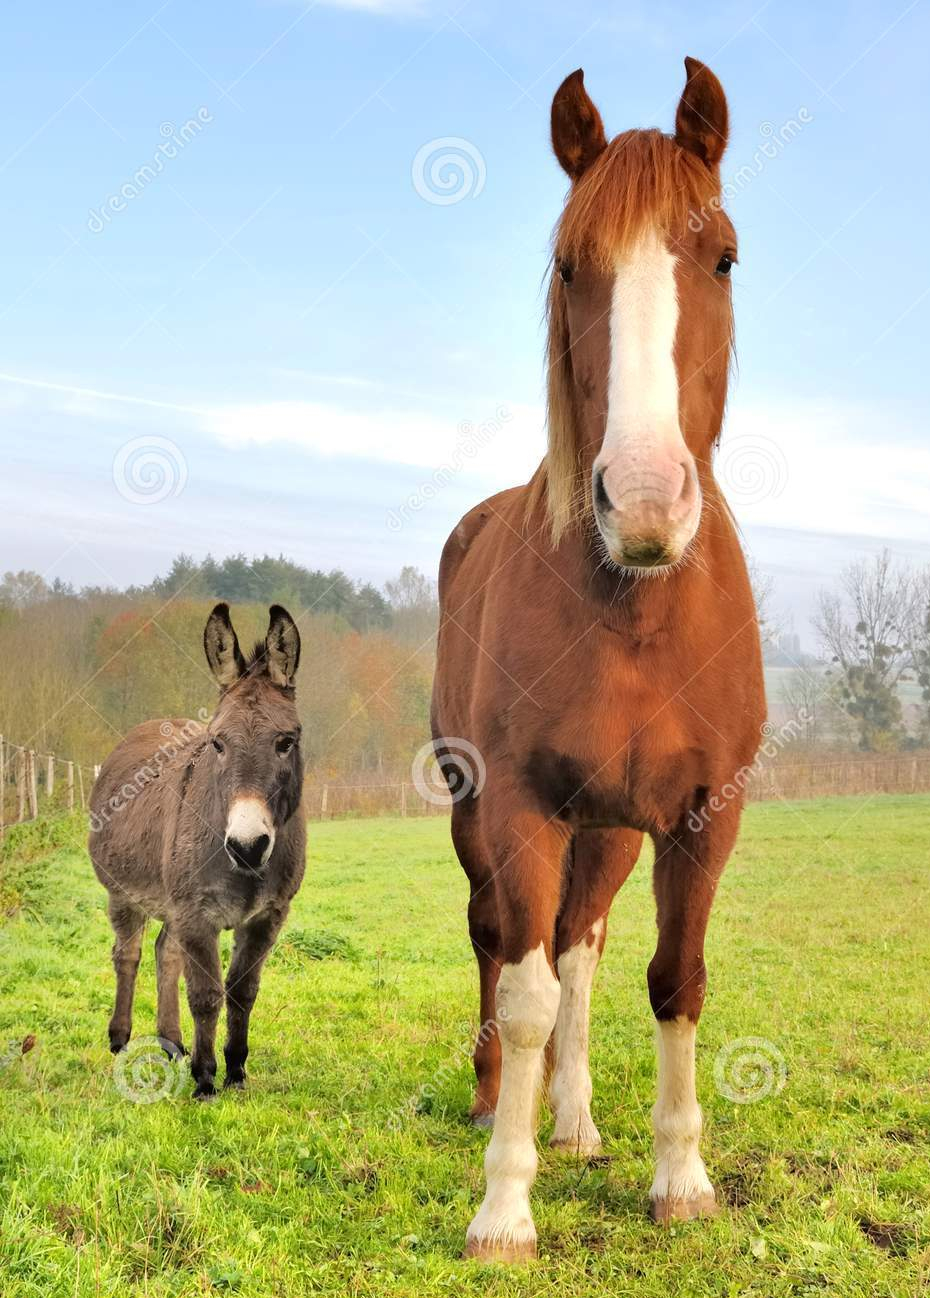 Horse vs Donkey